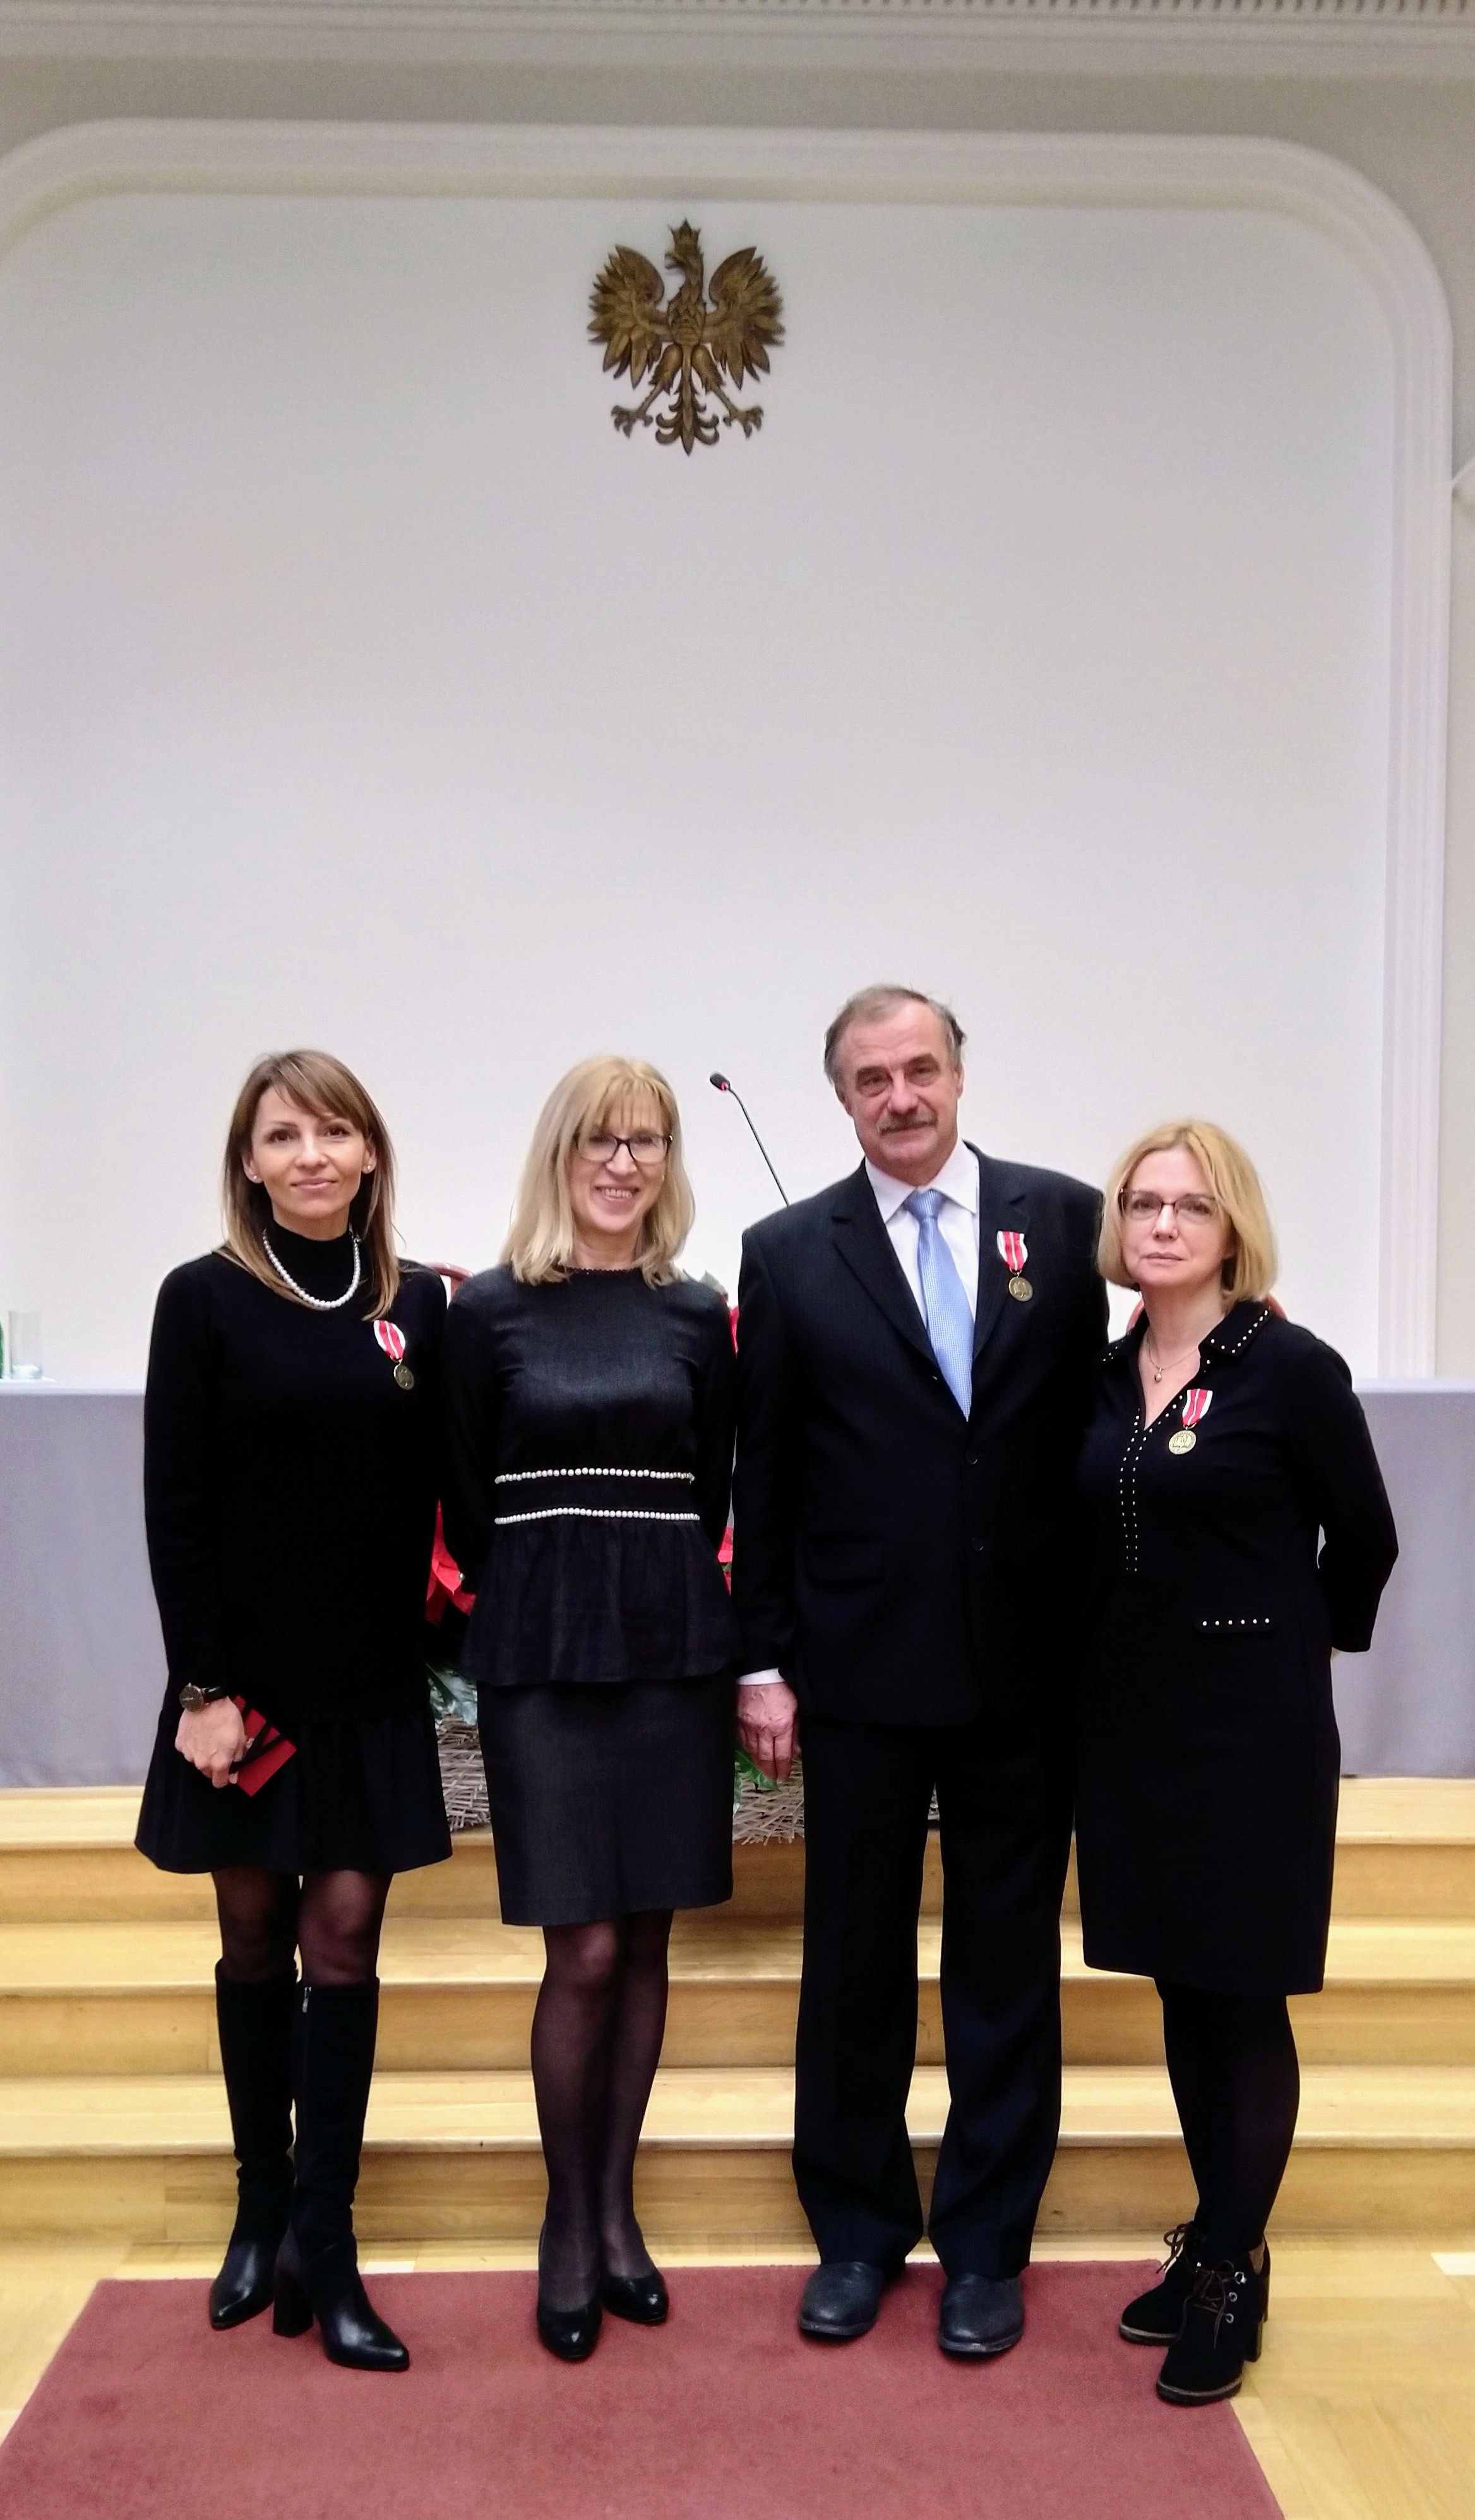 dr hab. Iwona Kiniorska i dr Monika Żelezik oraz Pan prof. UJK dr hab. Tomasz Kalicki prezentują Medale Komisji Edukacji Narodowej.